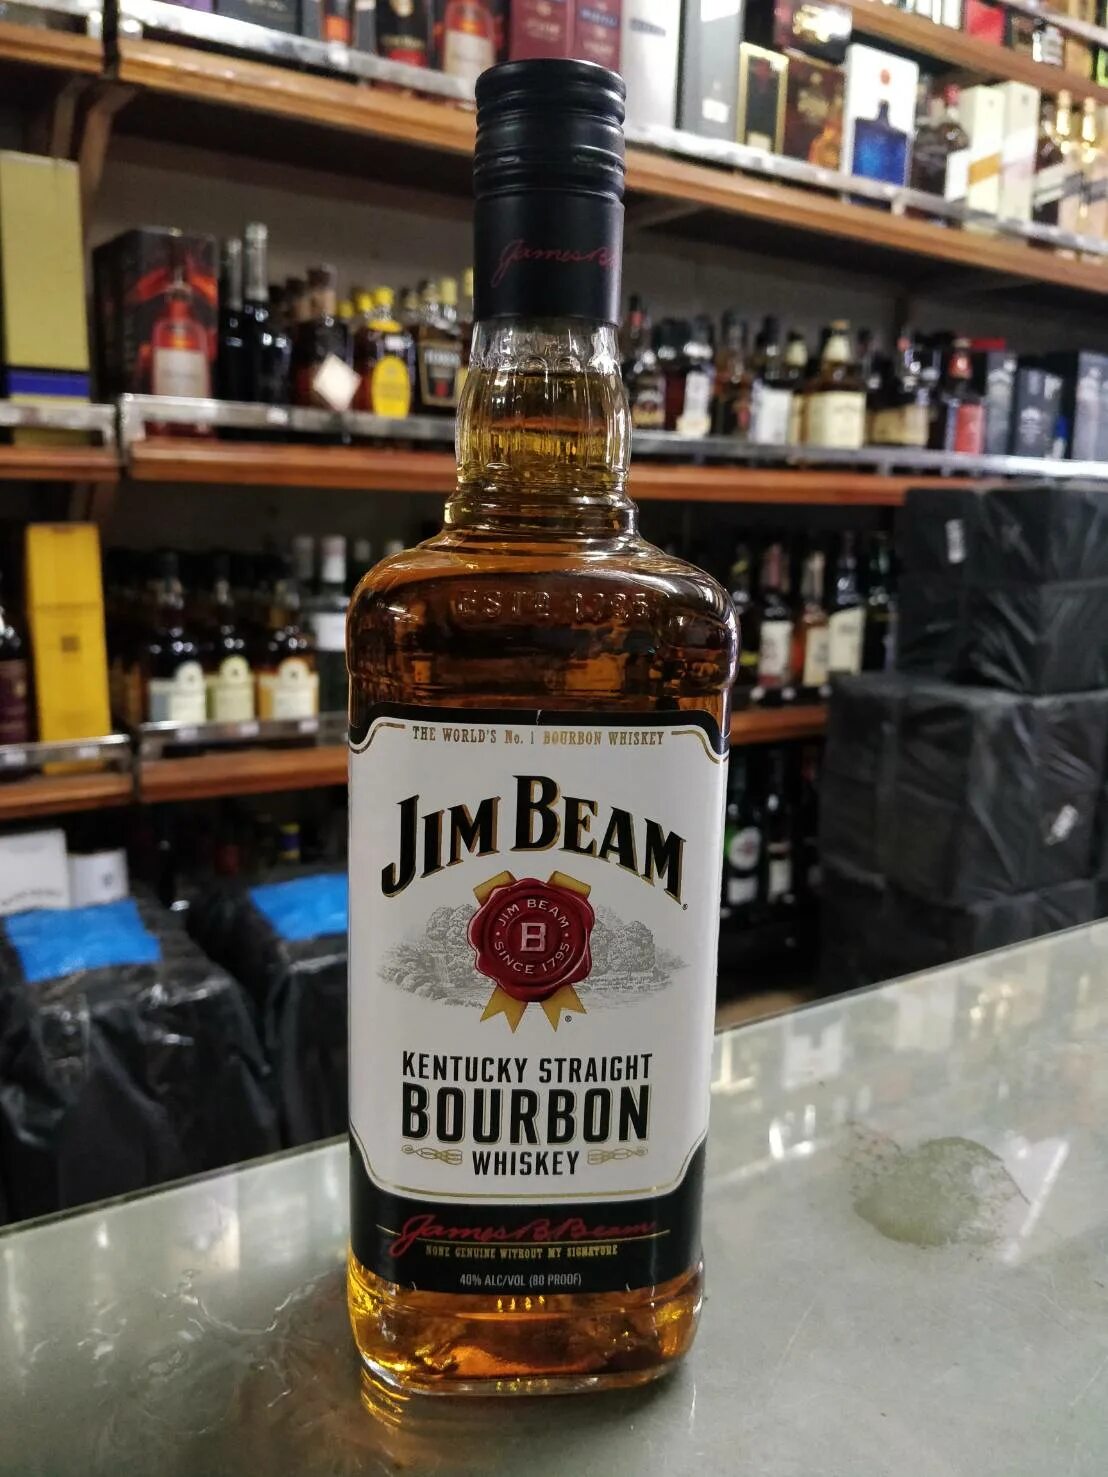 Виски Джим Бим Бурбон 1 литр. Jim Beam виски 1. Джим Бим виски 1 литр. Виски Jim Beam Bourbon 1 литр.